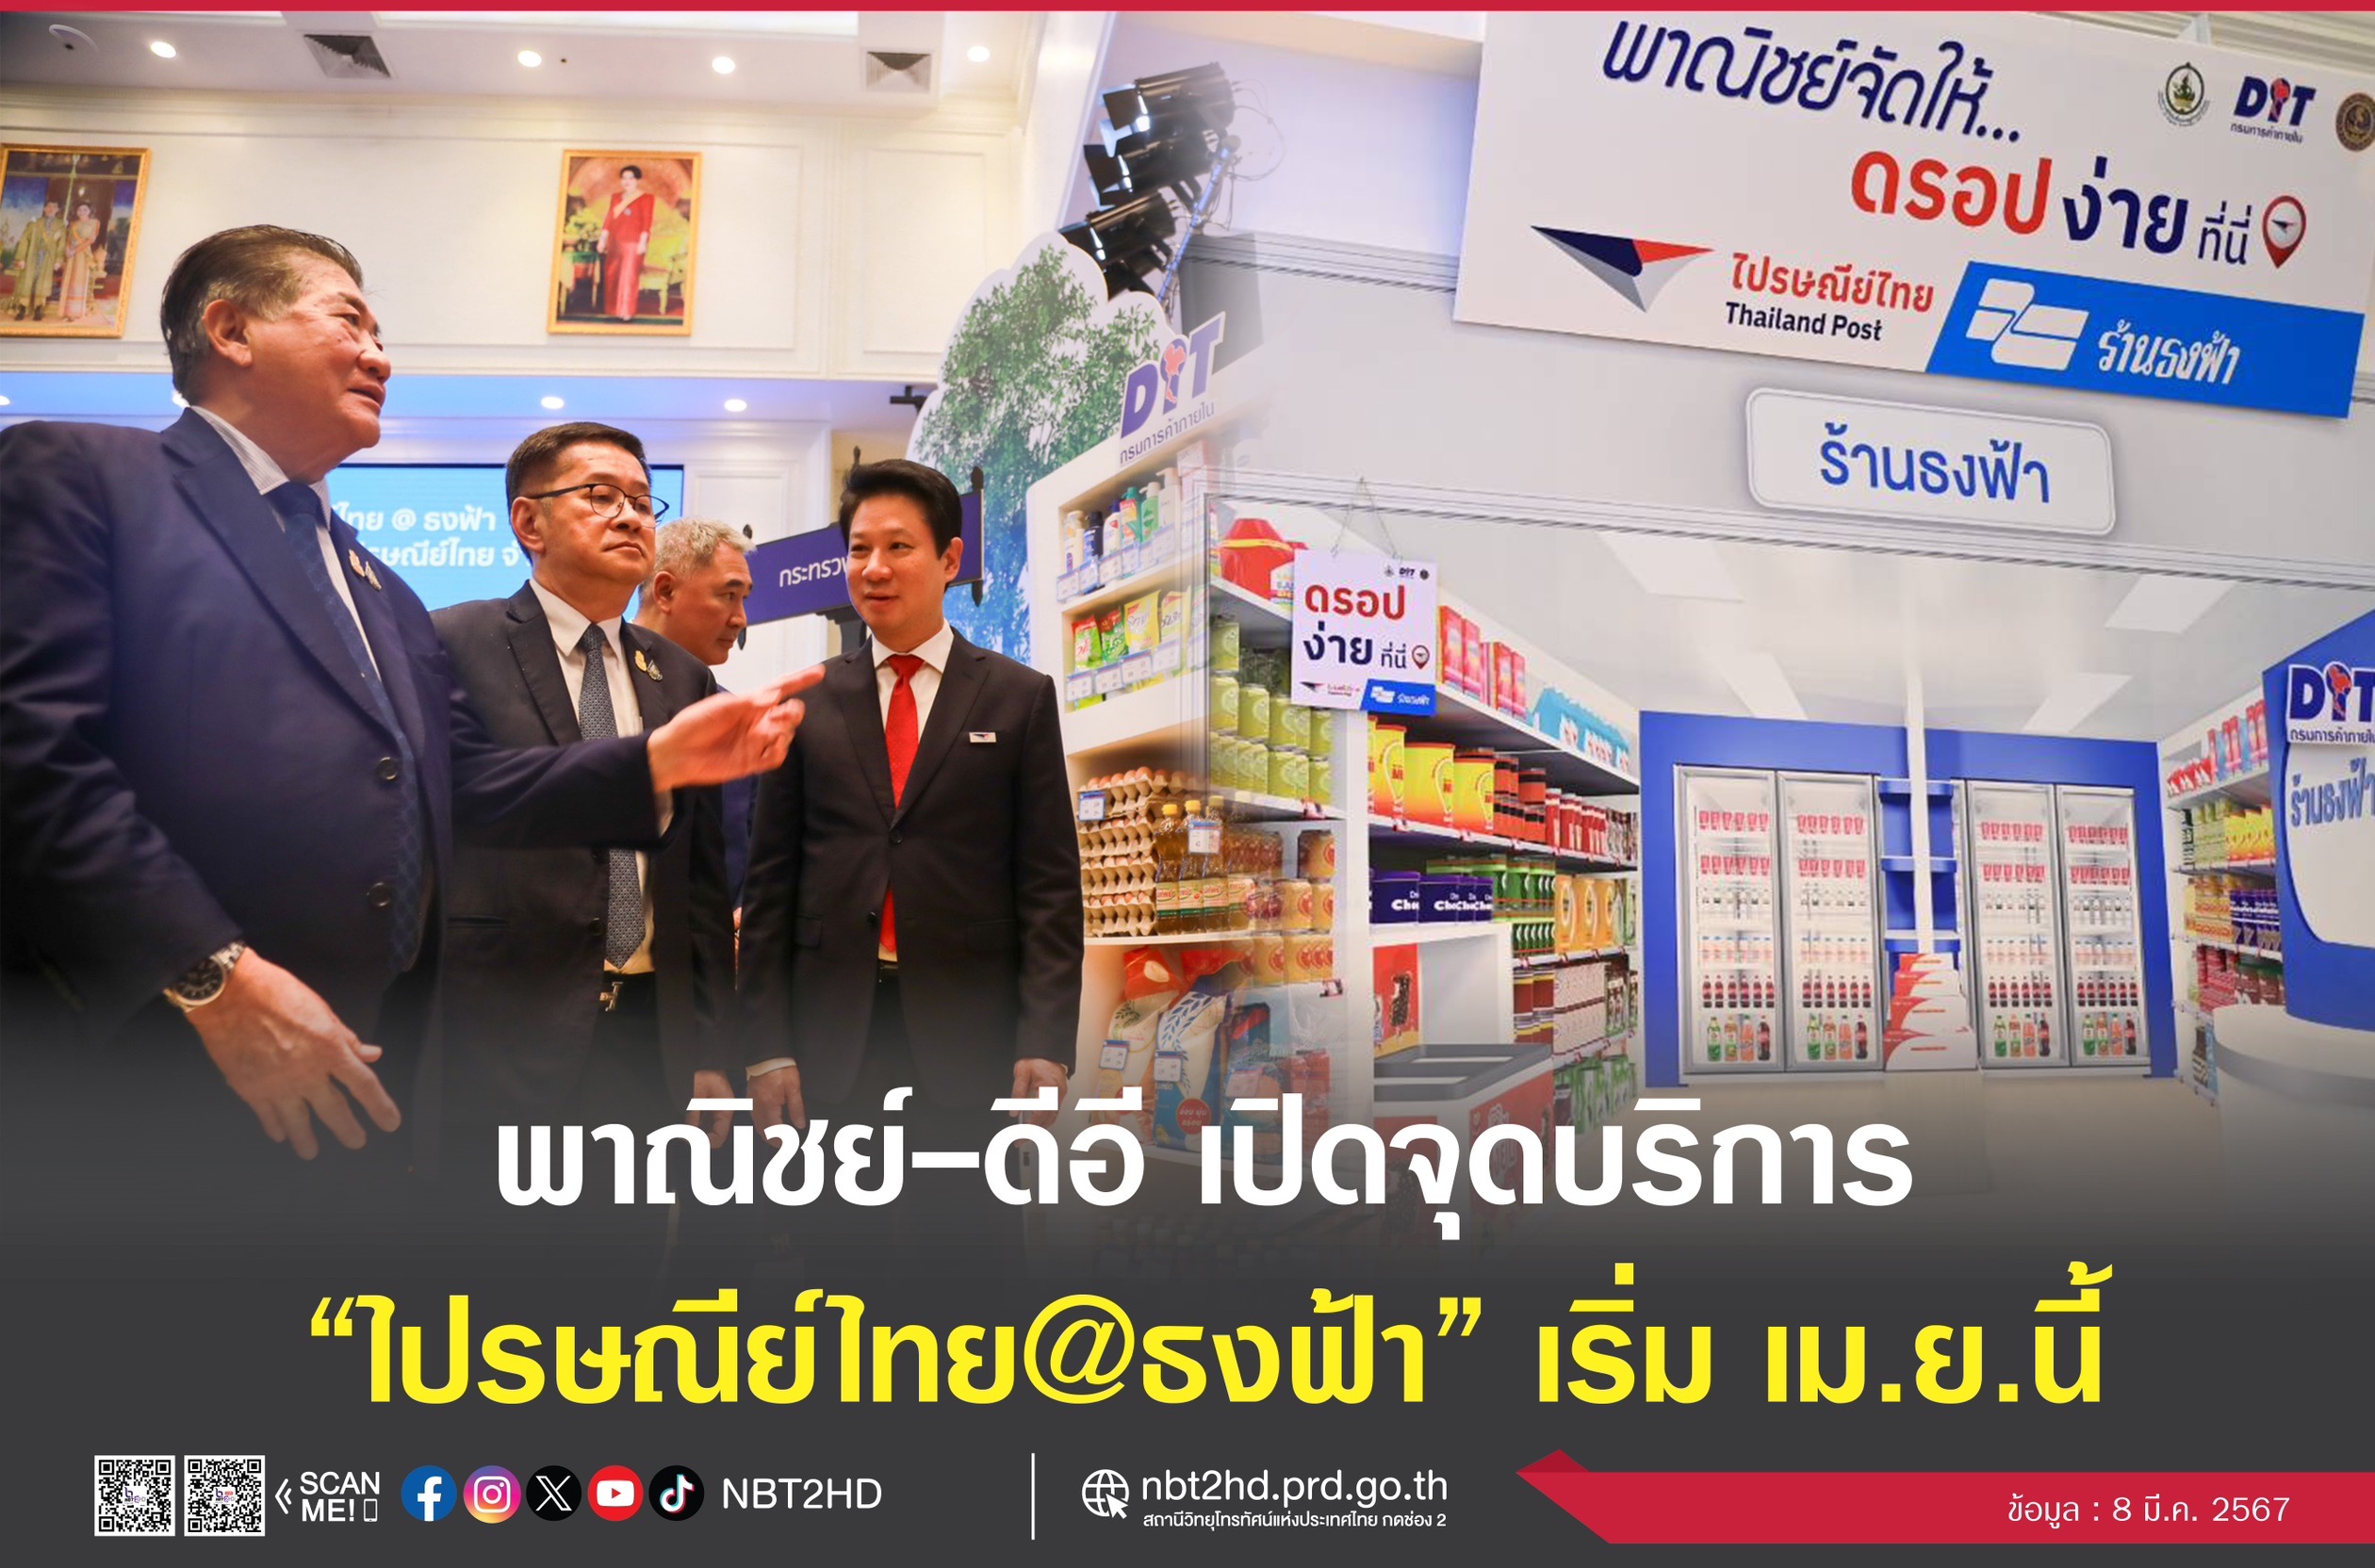 ดีอี - ไปรษณีย์ จับมือ พาณิชย์ ขยายจุดบริการส่งพัสดุสู่ร้านธงฟ้ากว่า 20,000 สาขาทั่วประเทศ ไปรษณีย์ไทย @ธงฟ้า เริ่ม เม.ย. 67